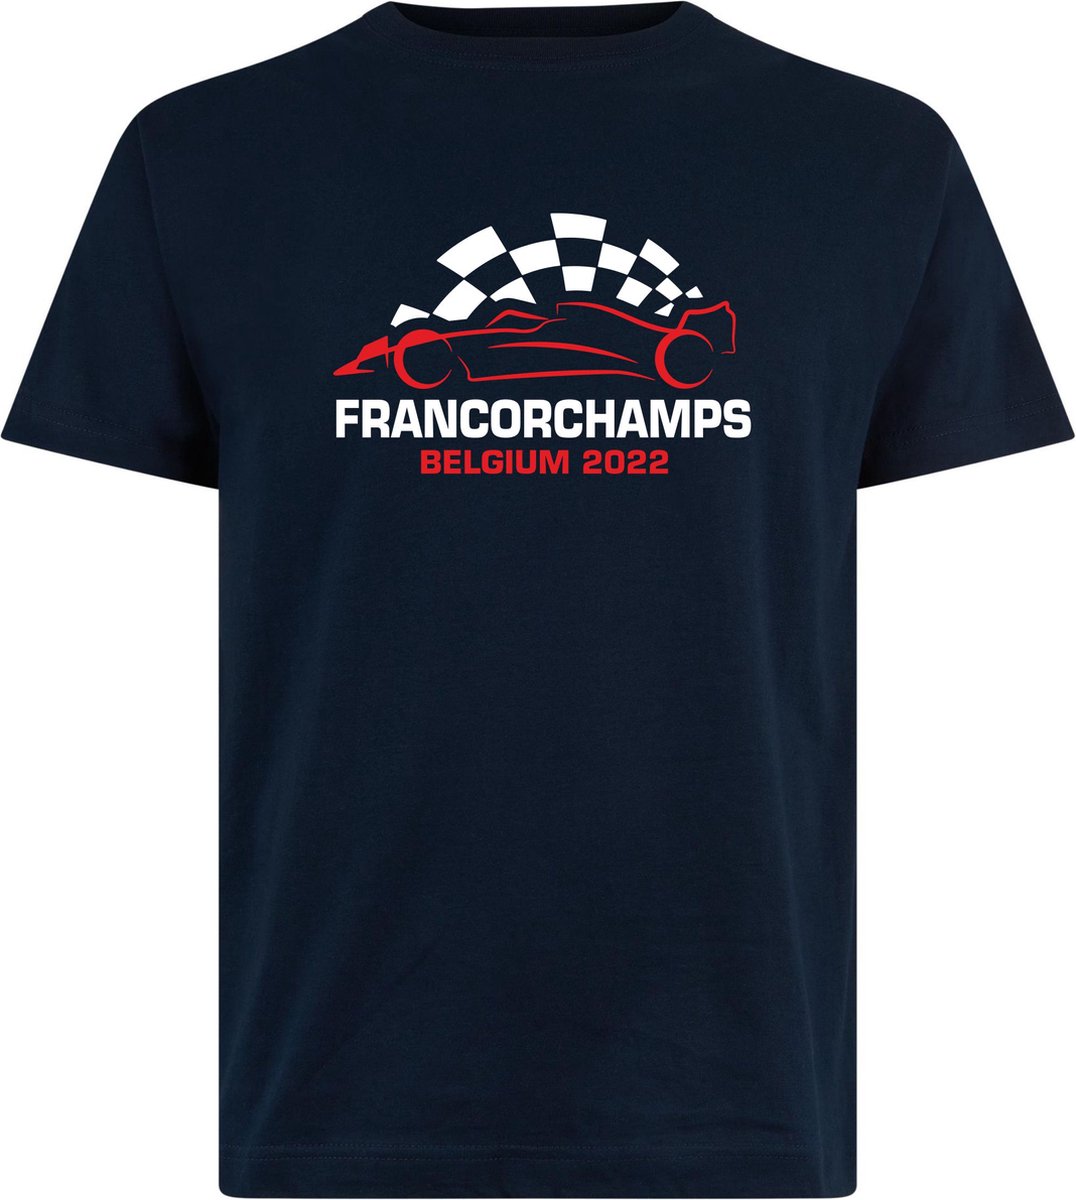 T-shirt kinderen Francorchamps Belgium 2022 met raceauto | Max Verstappen / Red Bull Racing / Formule 1 fan | Grand Prix Circuit Spa-Francorchamps | kleding shirt | Navy | maat 80